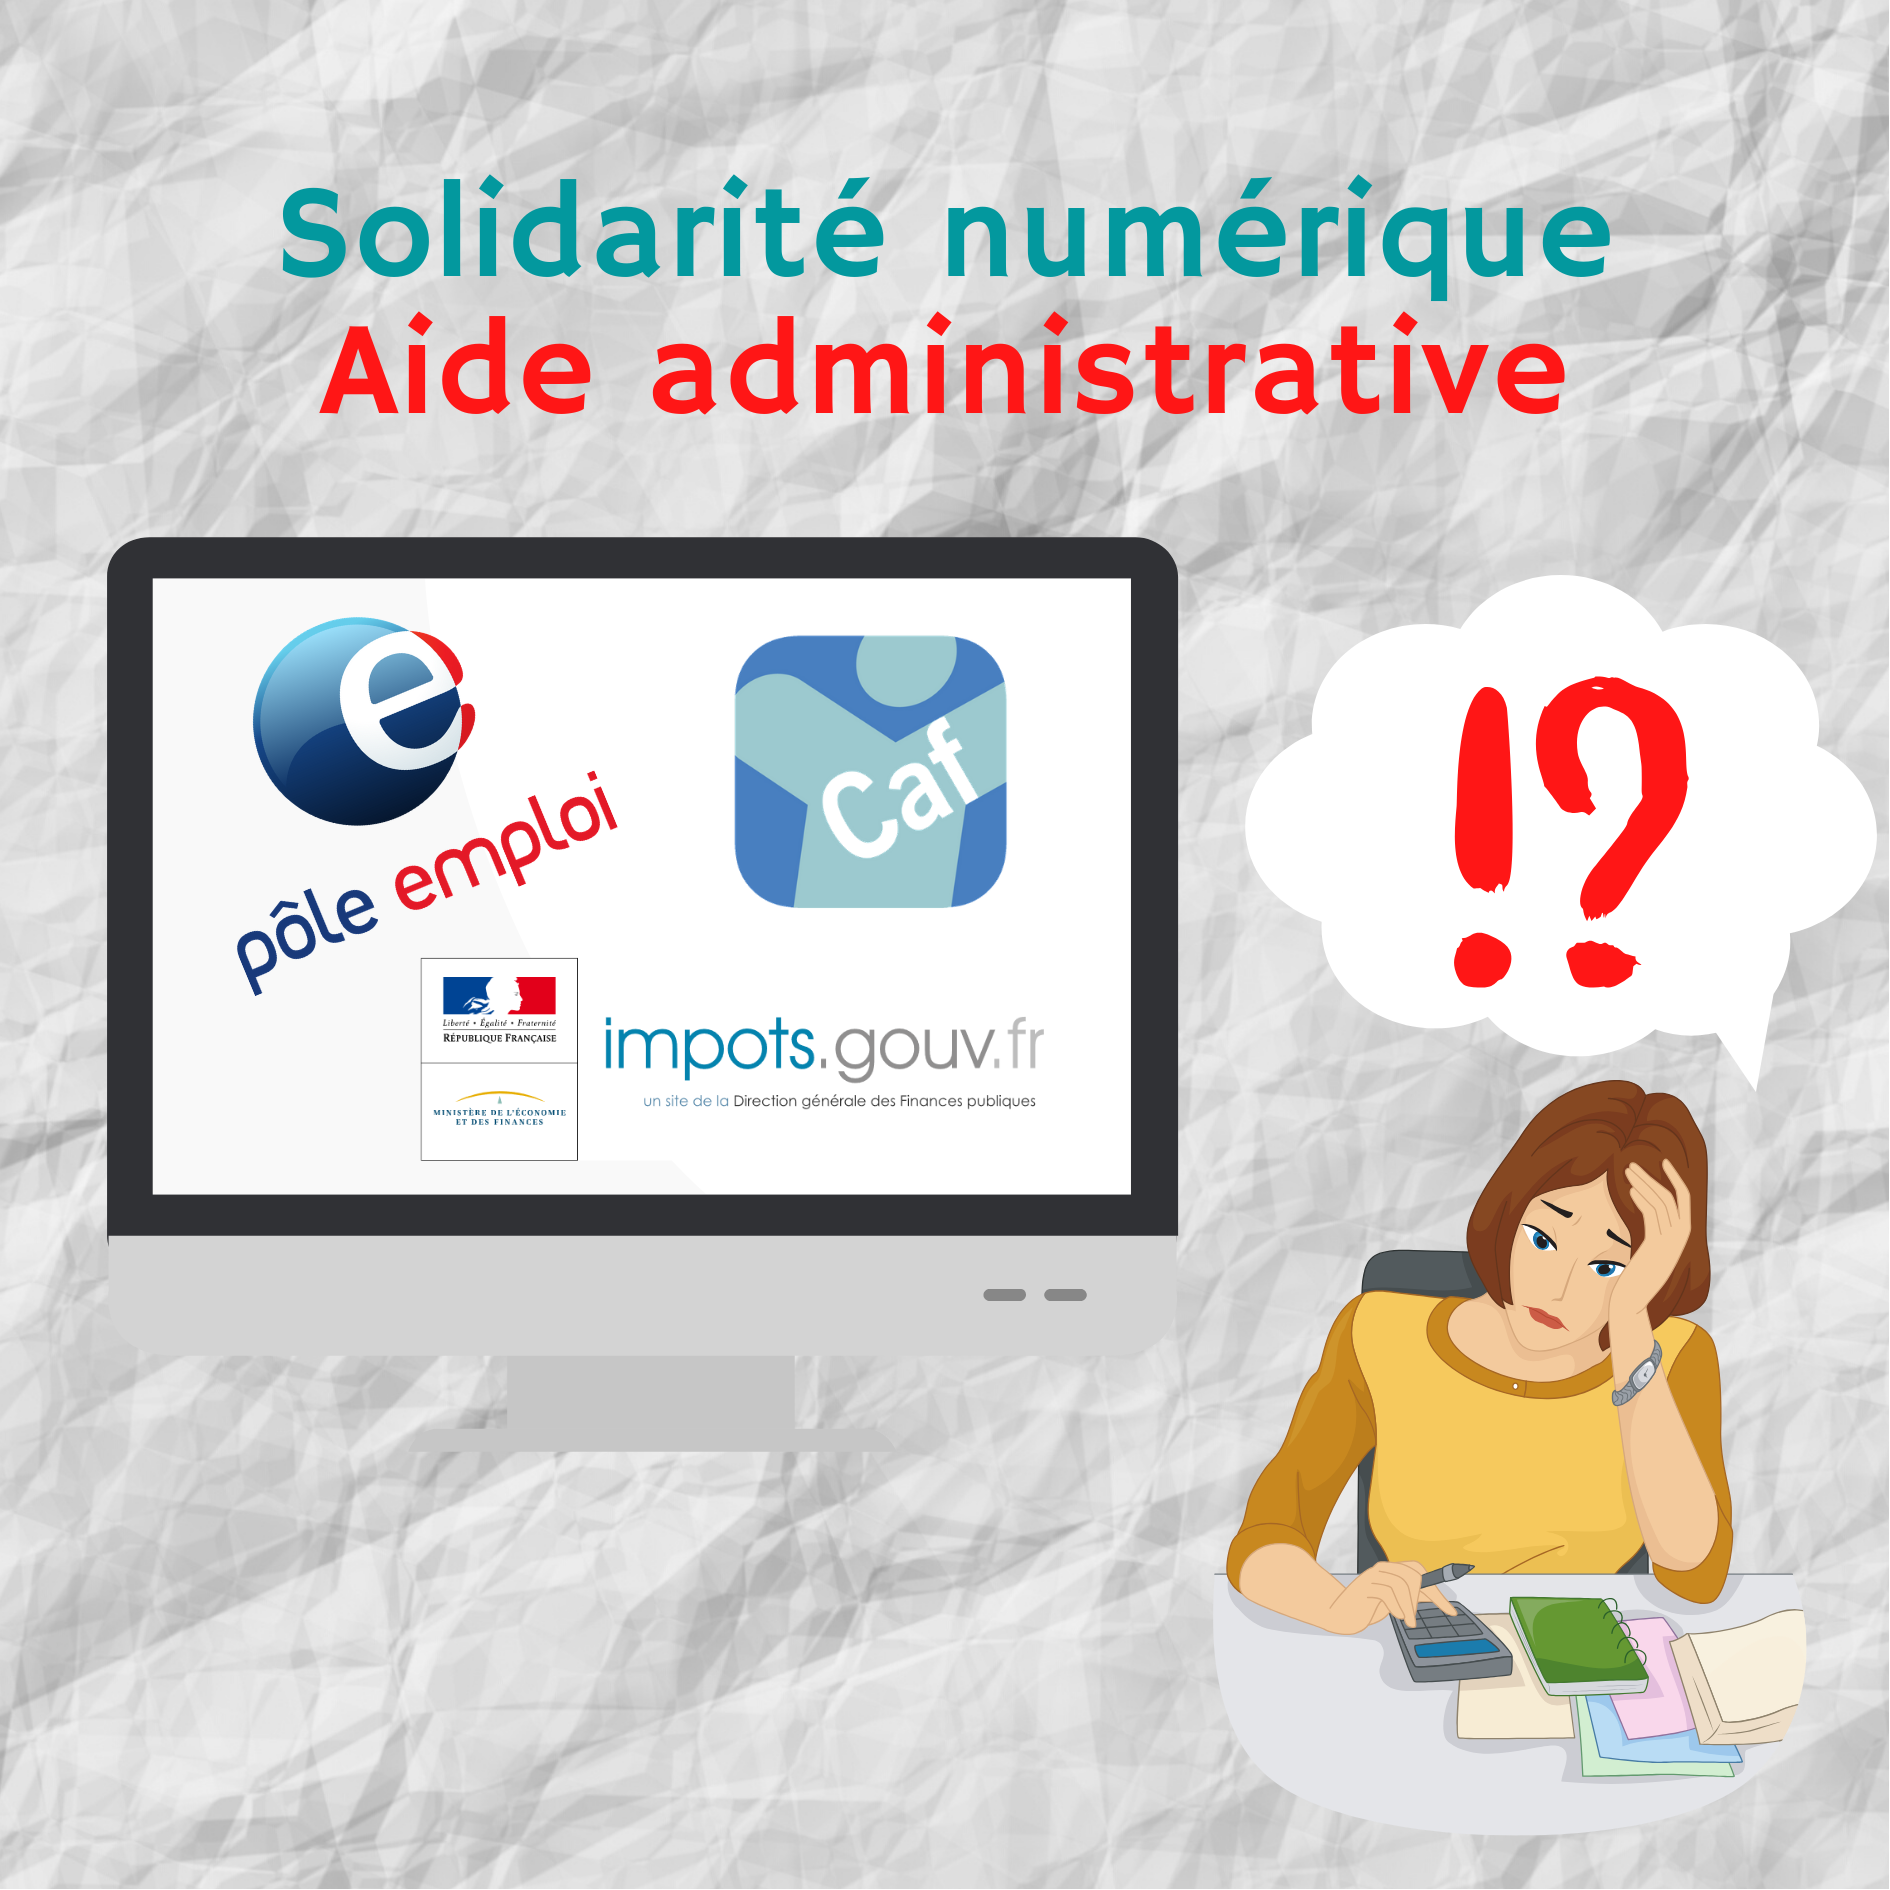 Solidarité numérique + aide administrative